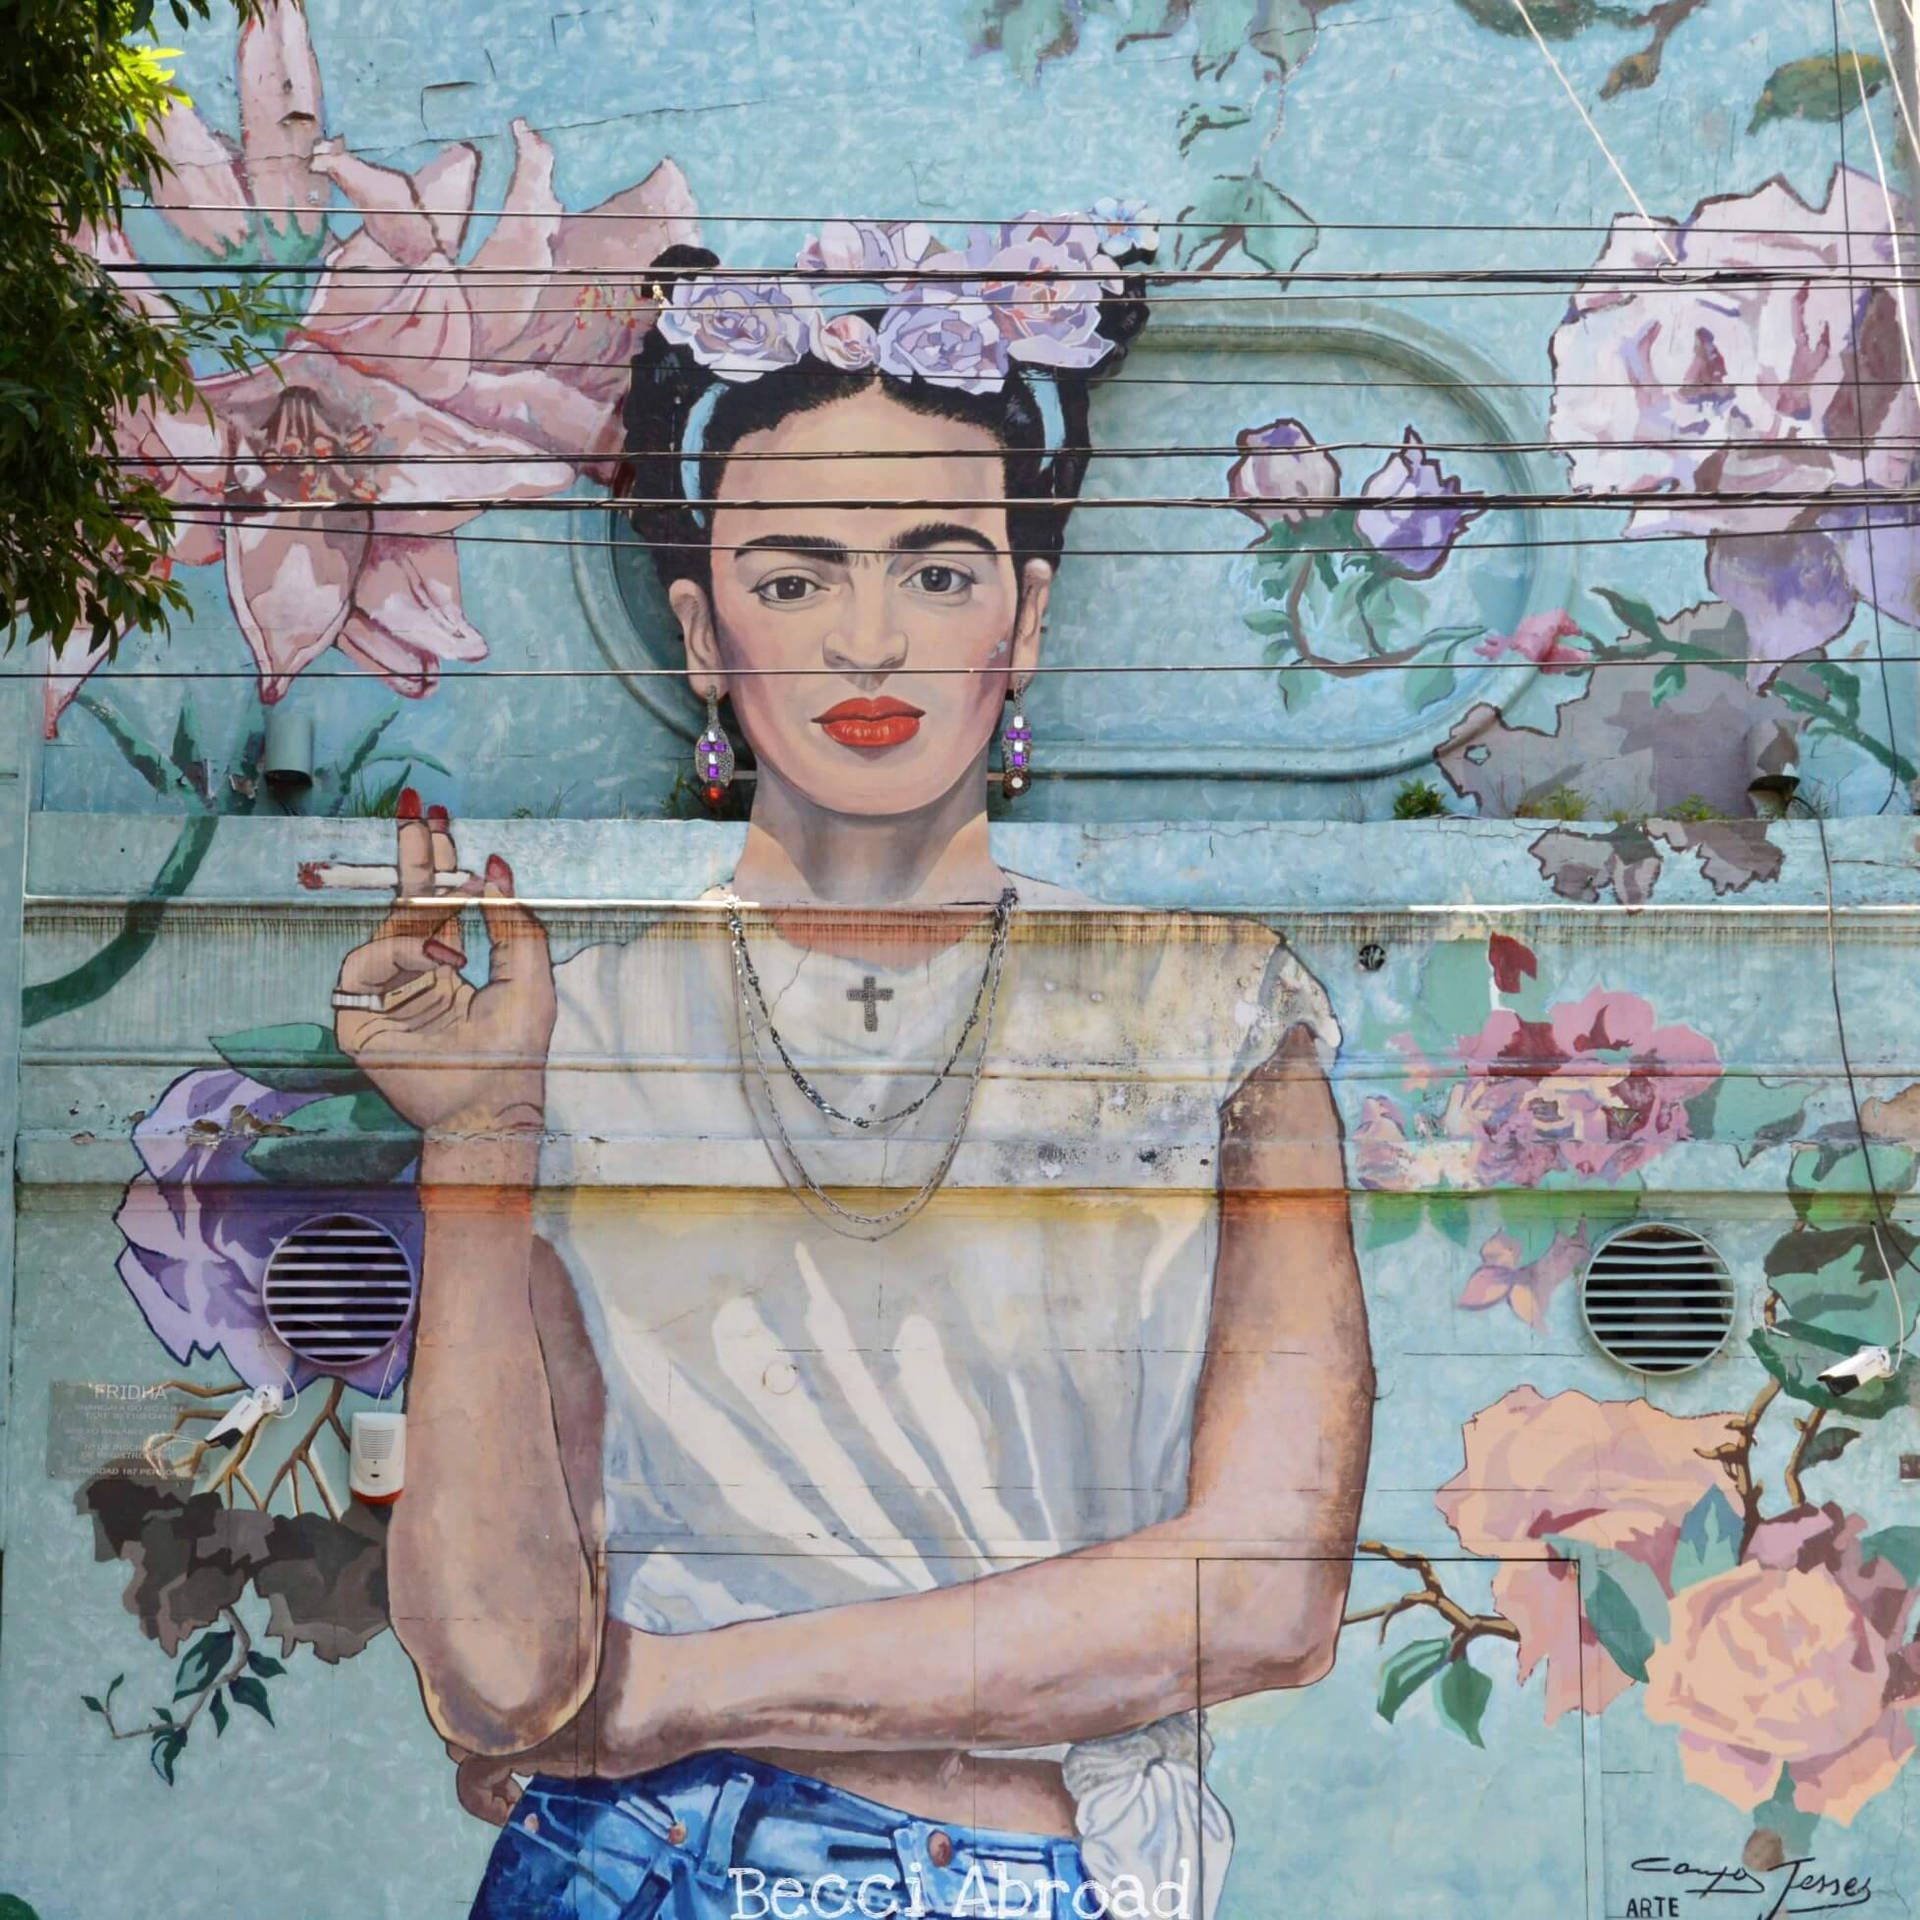 A mural of Frida Kahlo smoking a cigarette - Frida Kahlo